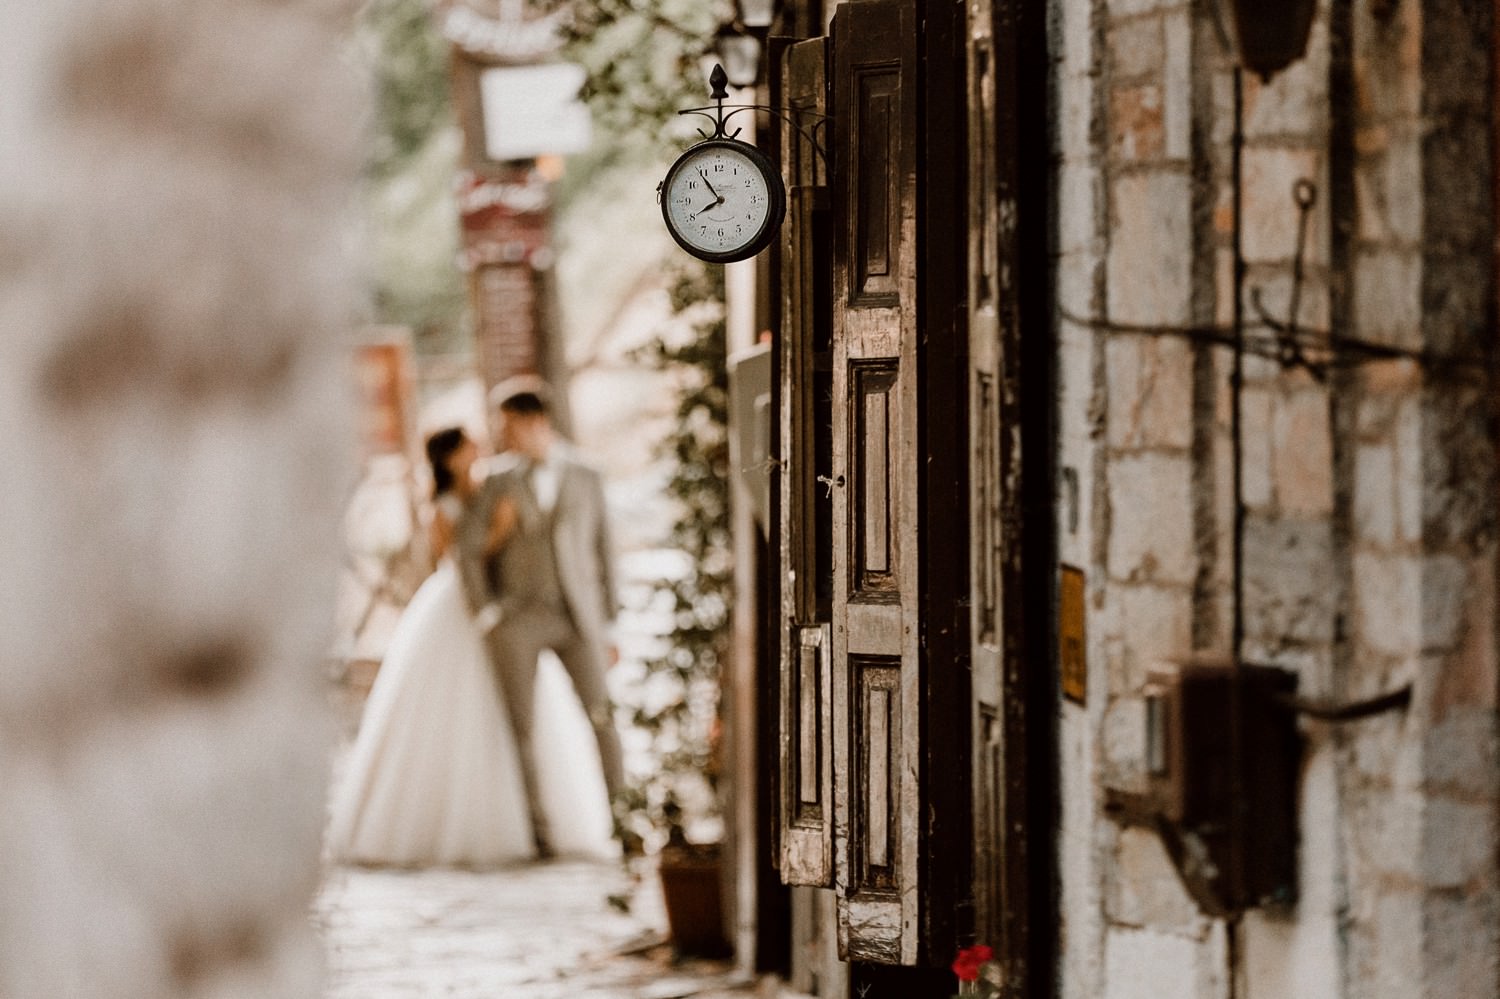 Alexandros & Suzana - Wedding in Portaria